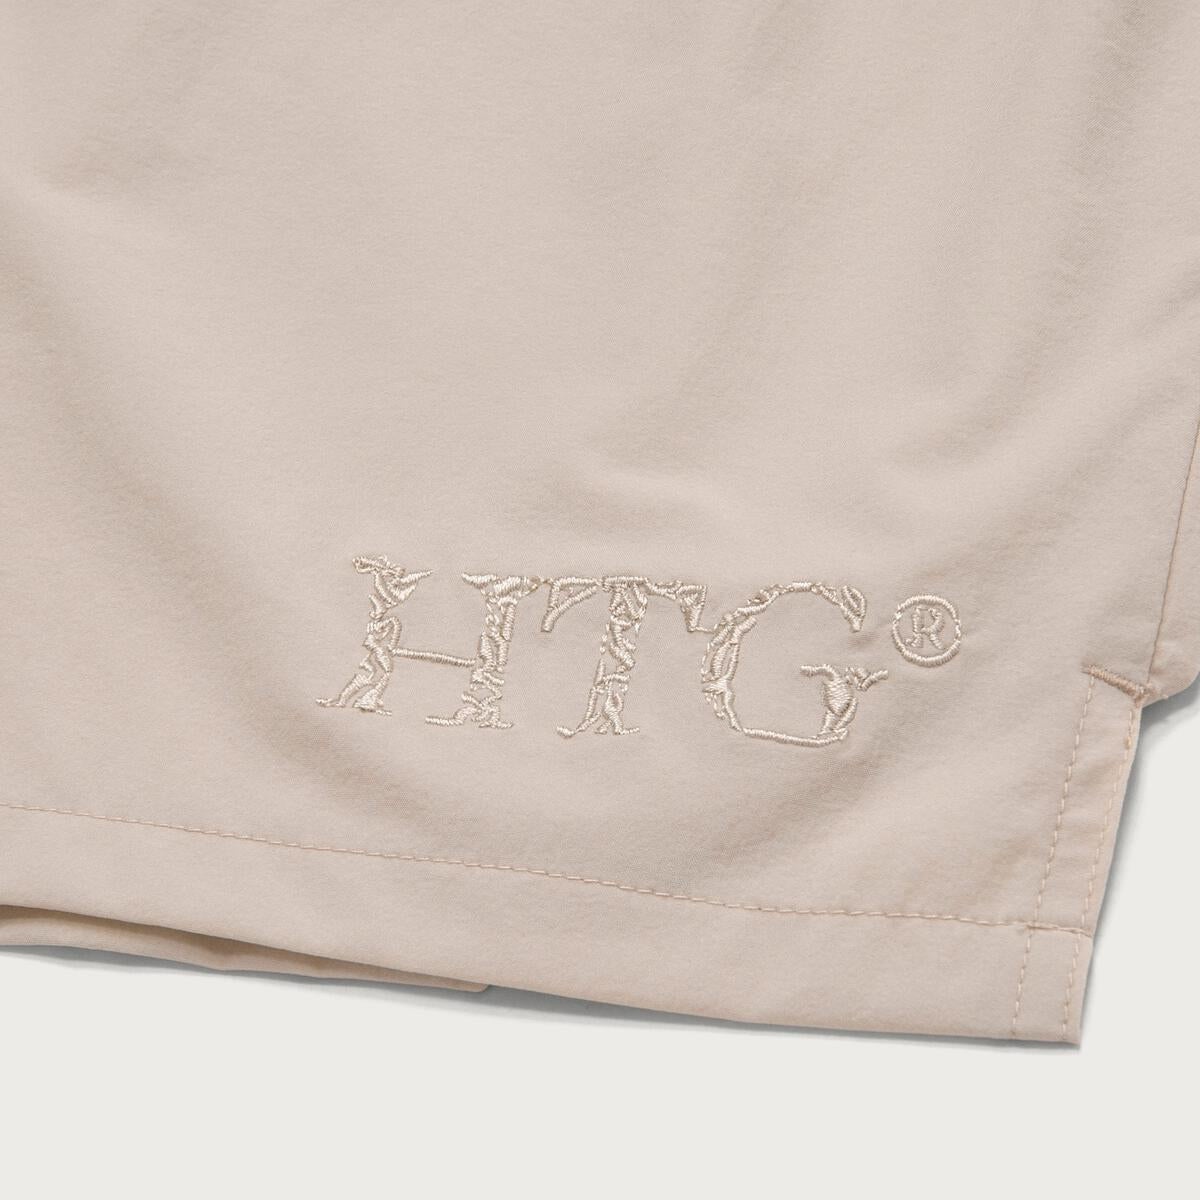 Hybrid Shorts - Cream